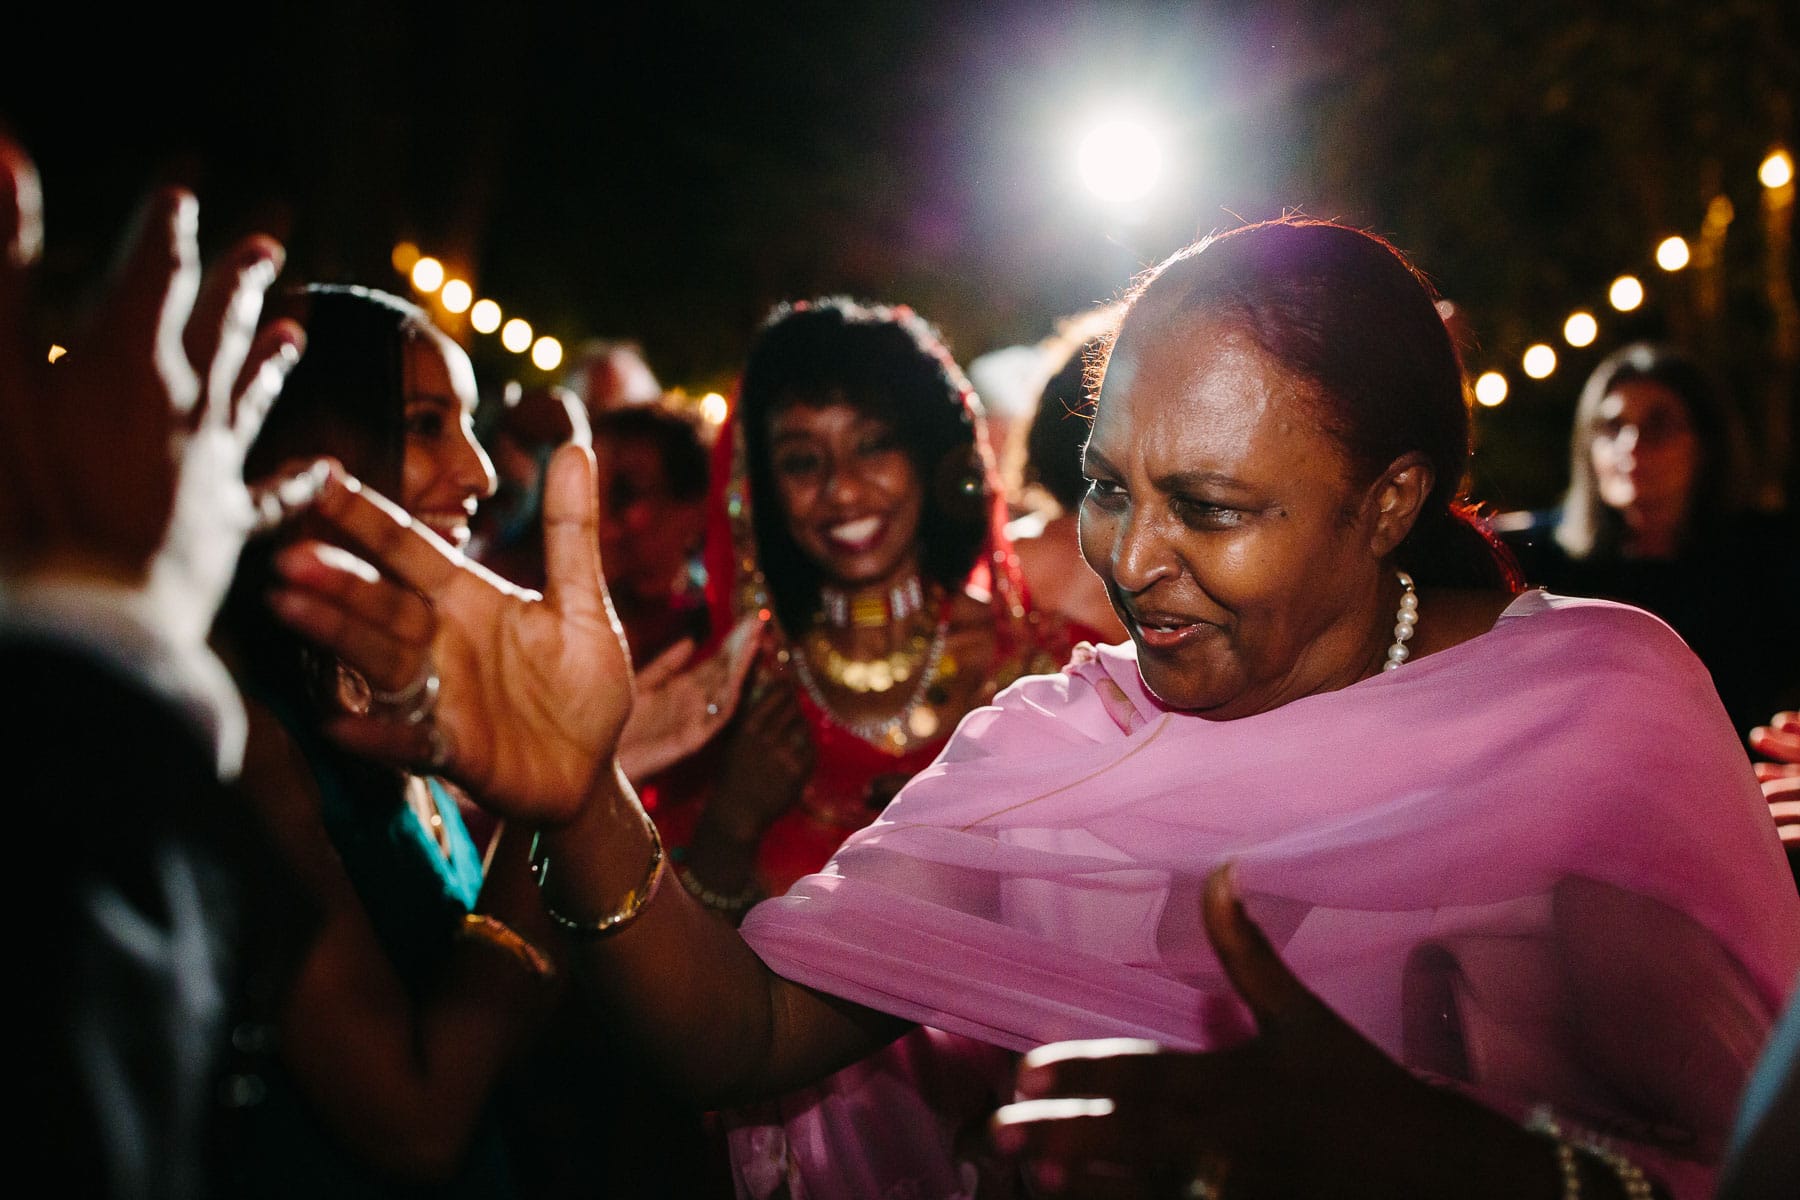 dancing at a backyard wedding  | Kelly Benvenuto Photography